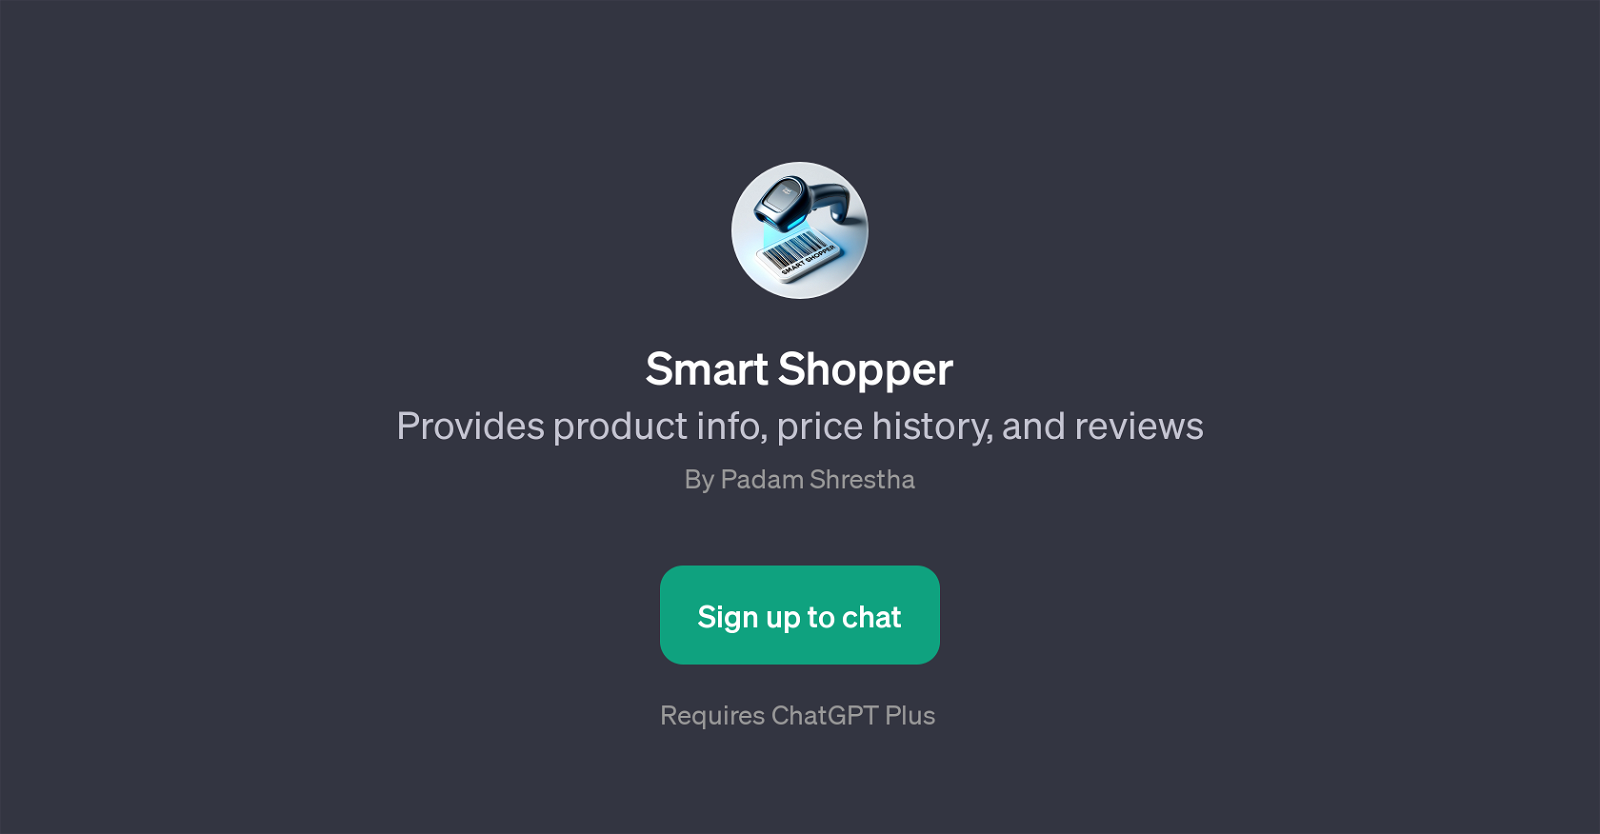 Smart Shopper website